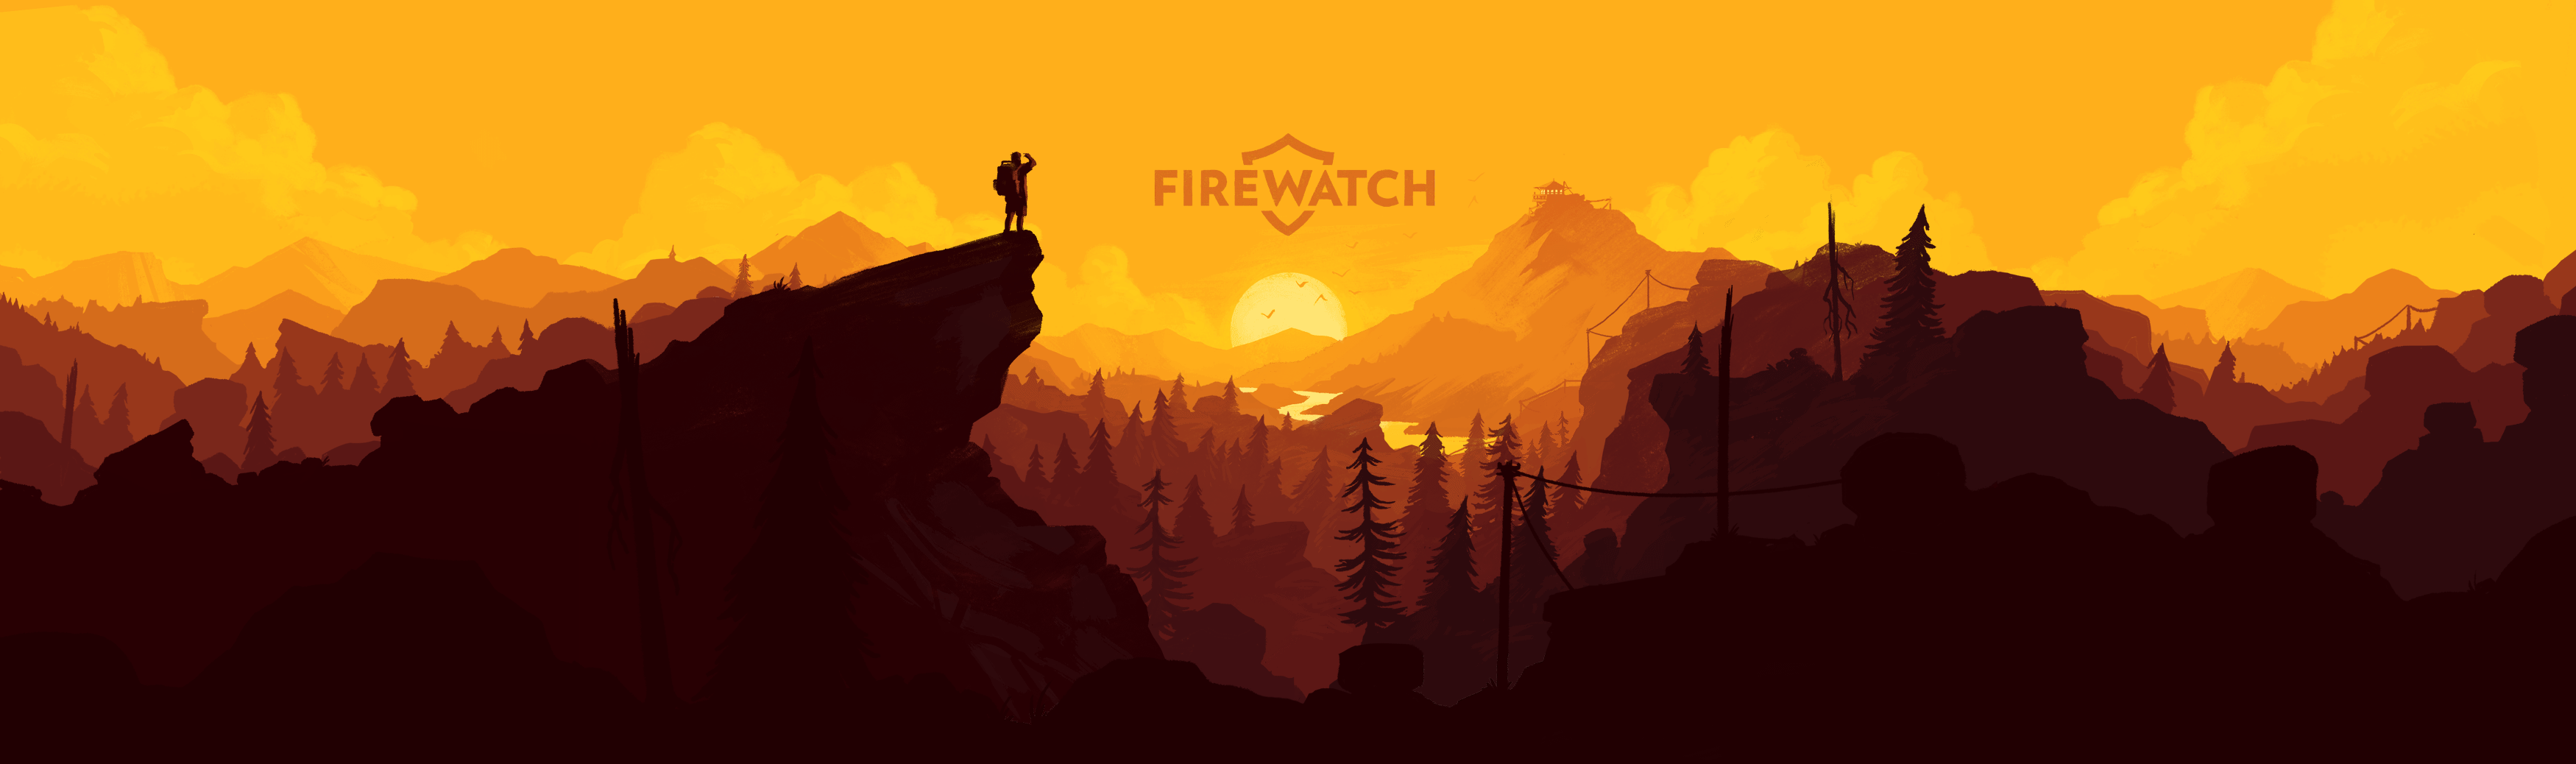 Firewatch Sunset 3500x1038